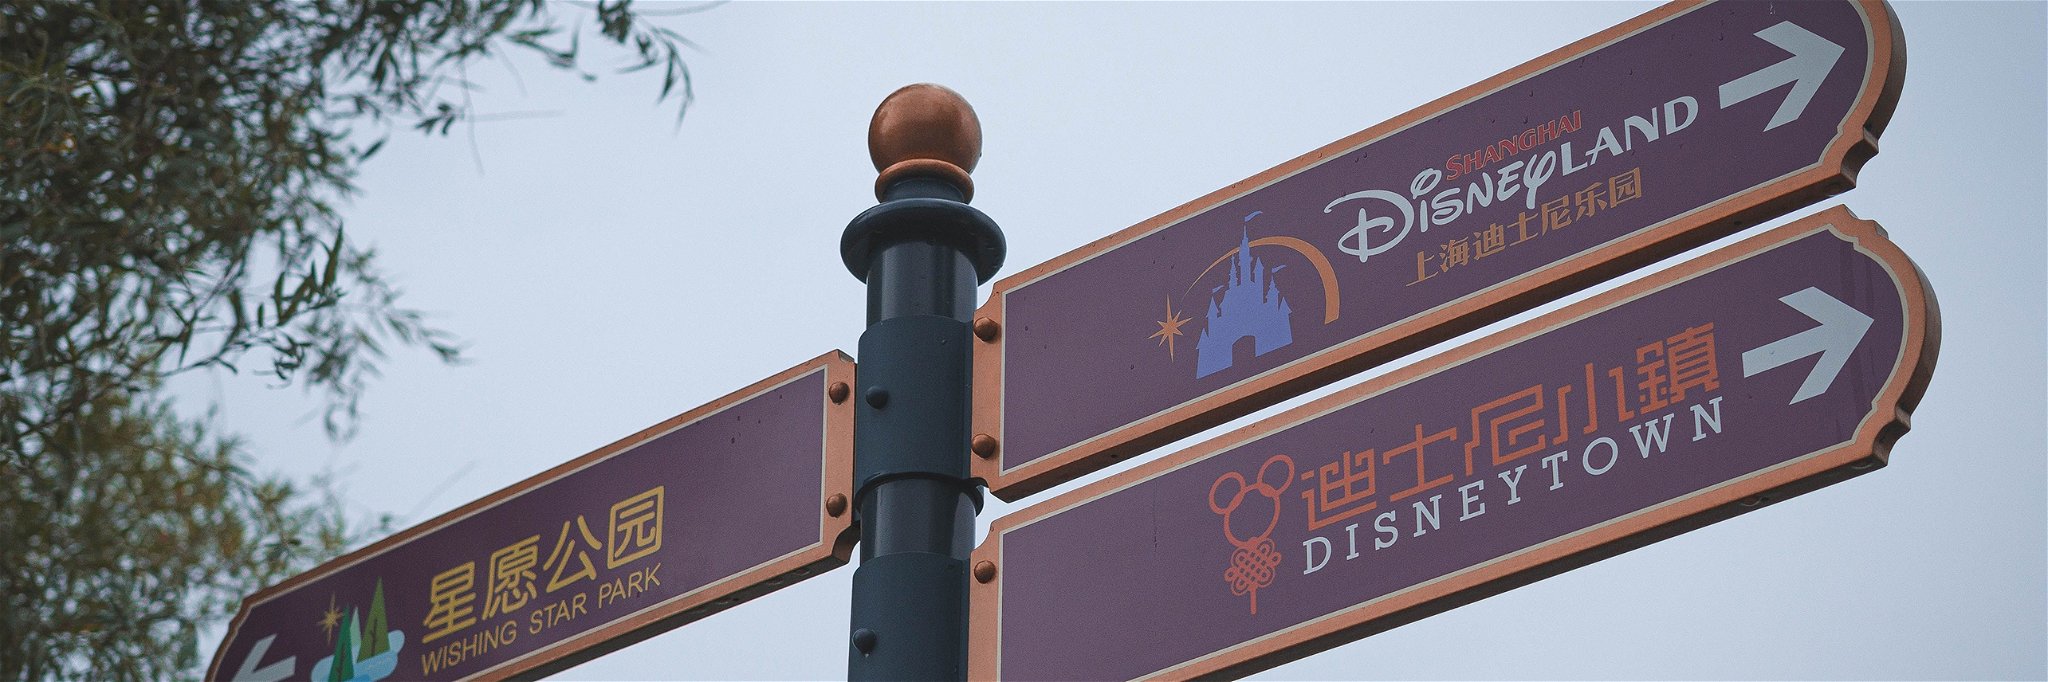 Disneyland signs in Shanghai